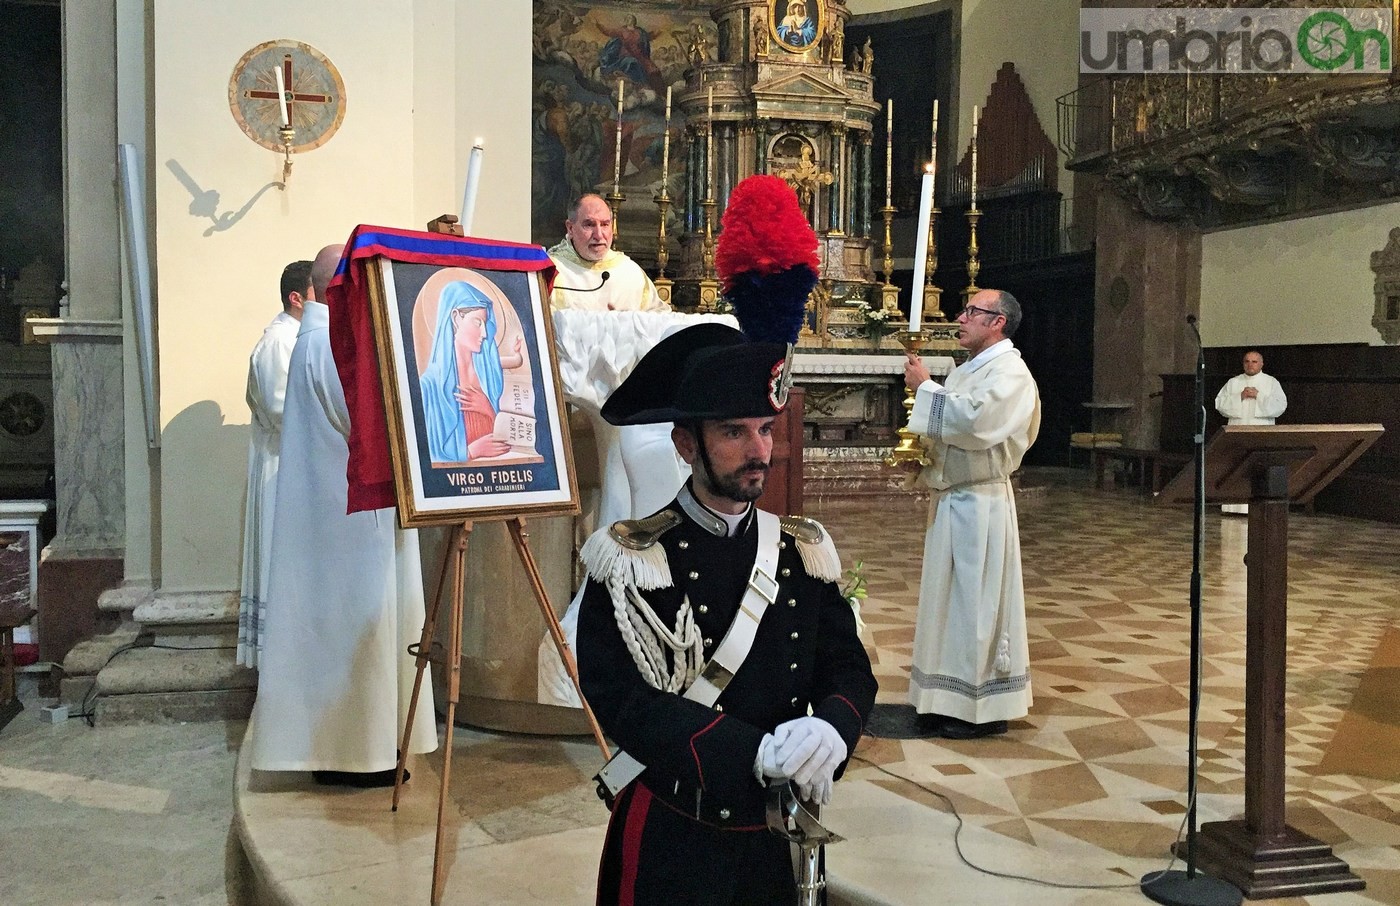 Virgo-Fidelis-carabinieri-Terni-in-cattedrale-21-novembre-2016-10